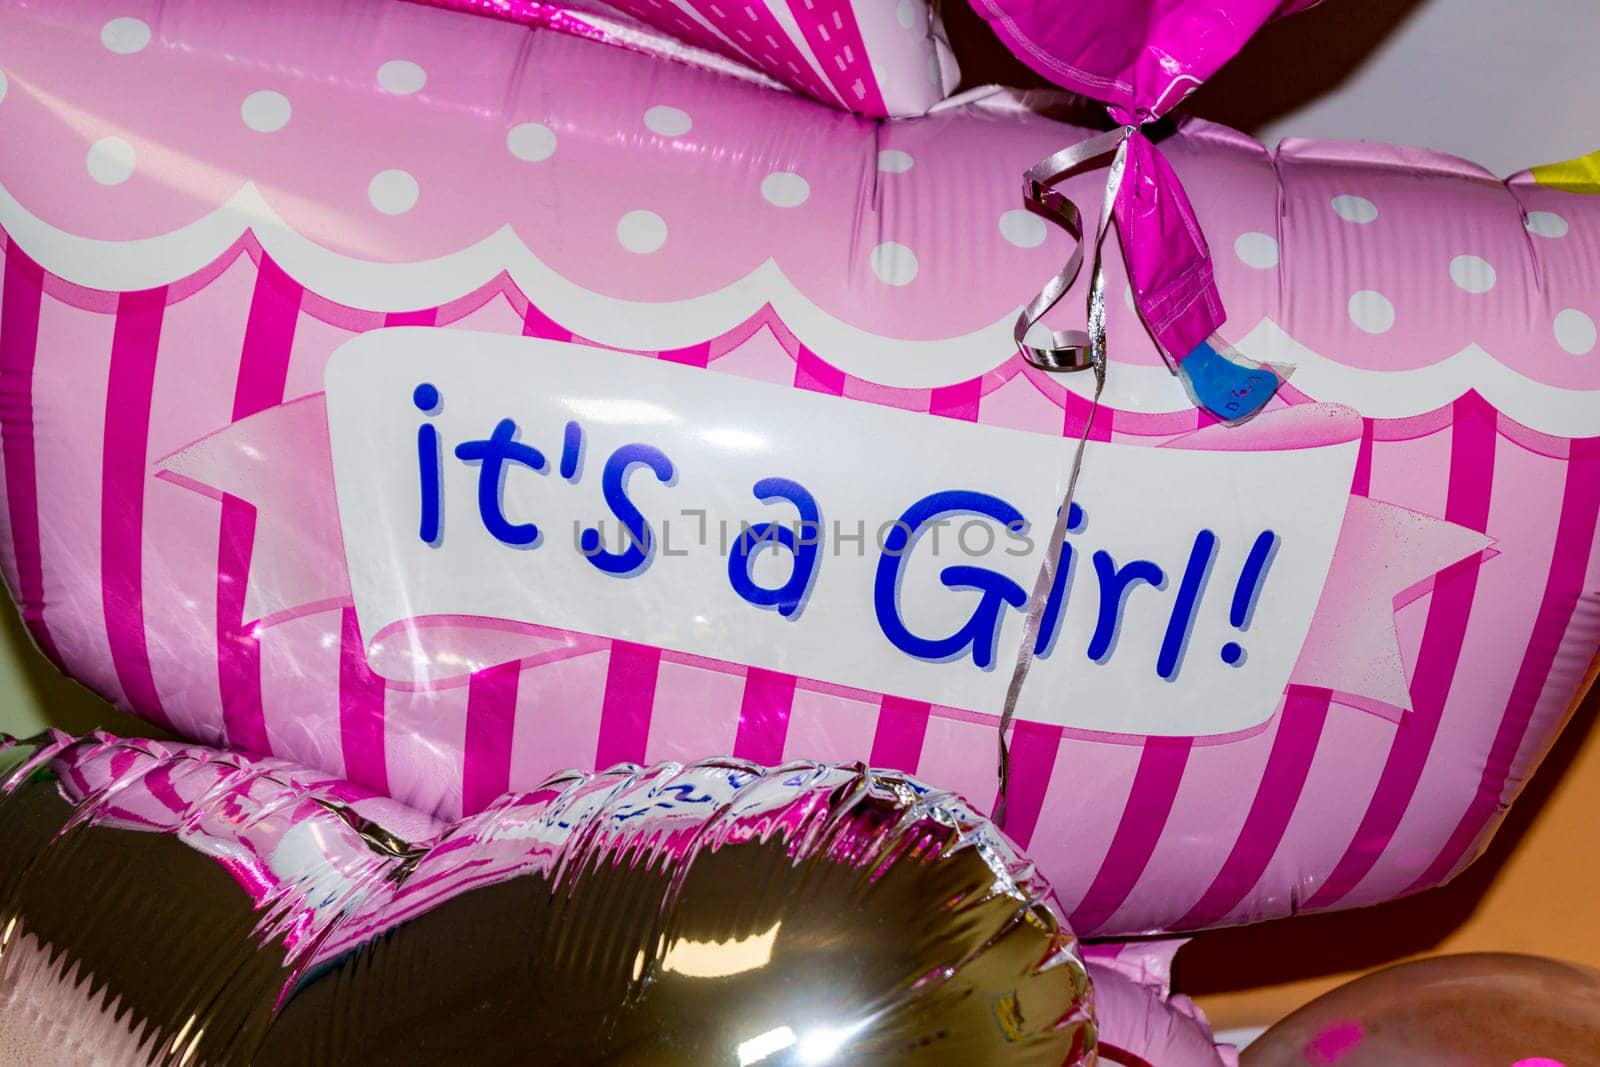 It's a girl. Bright pink balloon close-up by Serhii_Voroshchuk